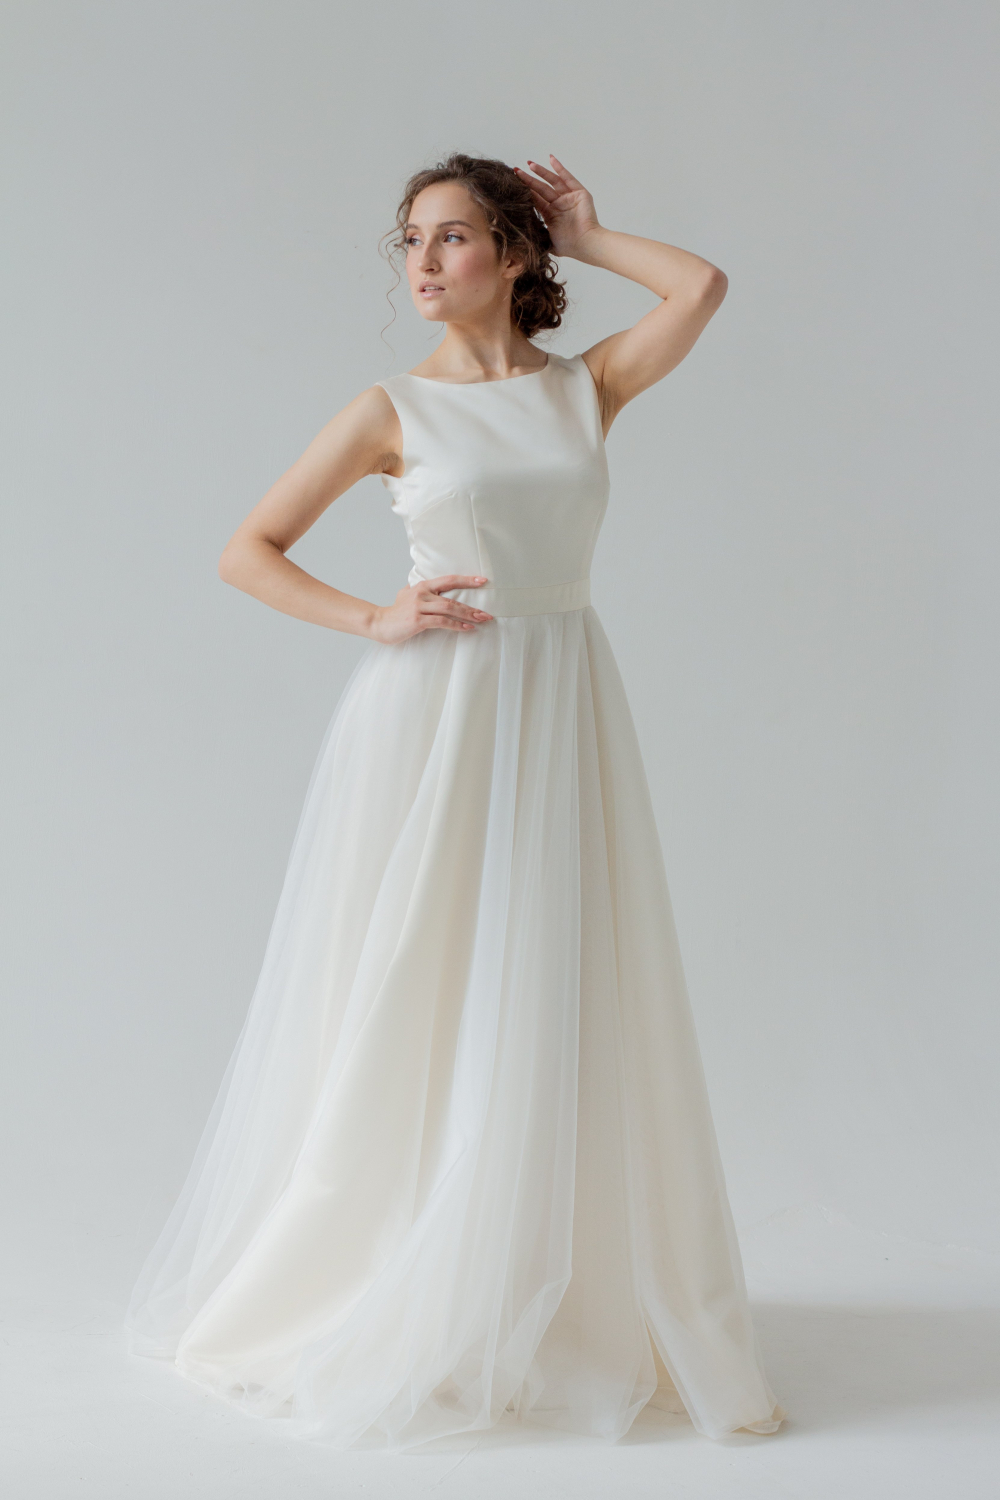 Красивого молочного оттенка  свадебное платье "Анна", с красивой спиной.
Размер 44.